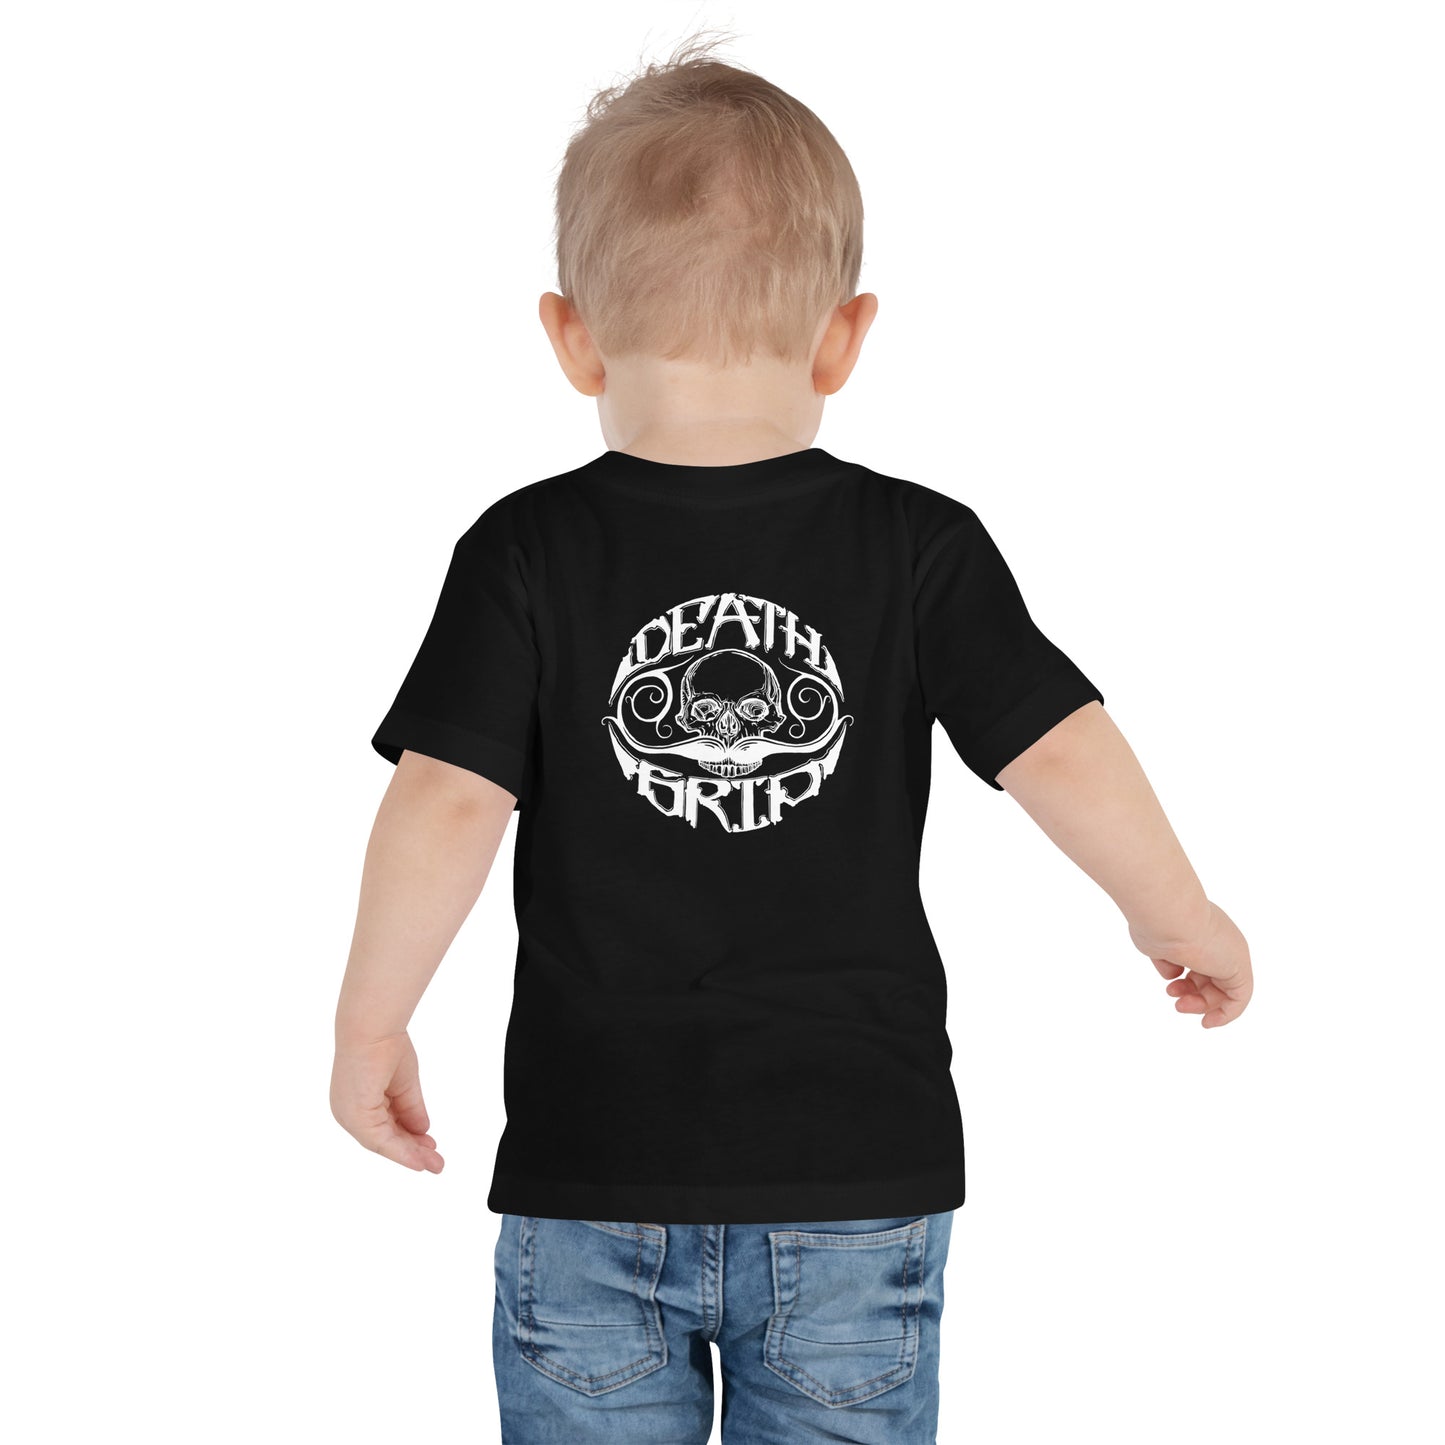 Chance Schott "Get a Grip" Toddler T-shirt